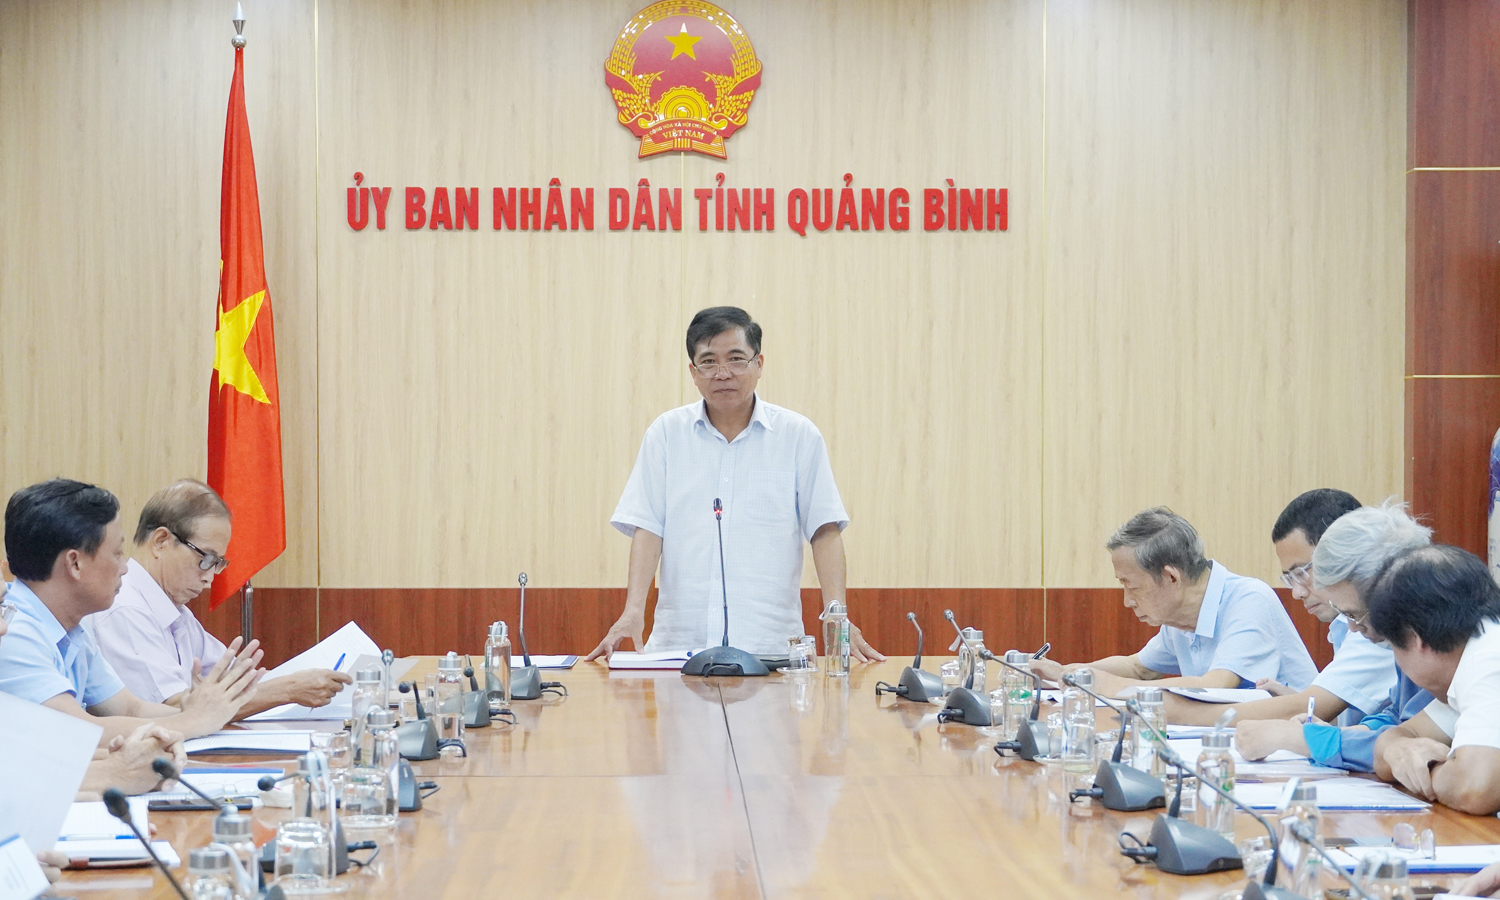 UBND tỉnh nghe báo cáo về giải pháp thoát lũ cho vùng Lệ Thủy, Quảng Ninh